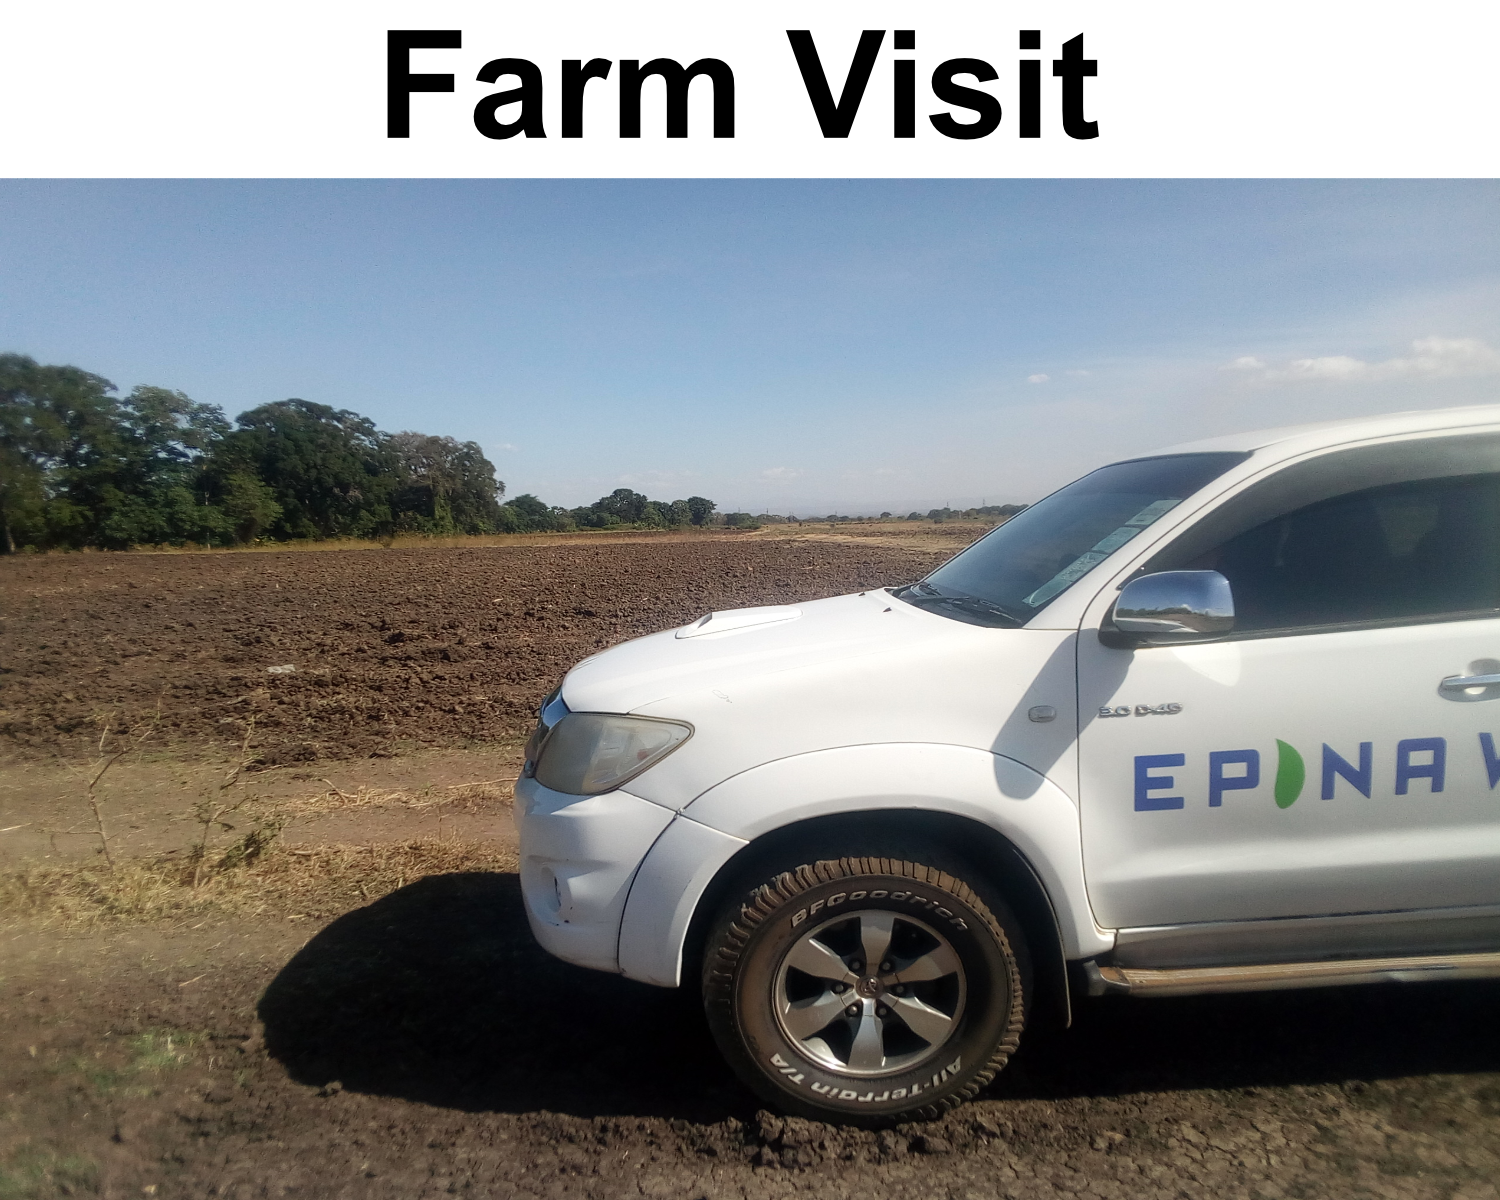 Farm Visit in Arusha